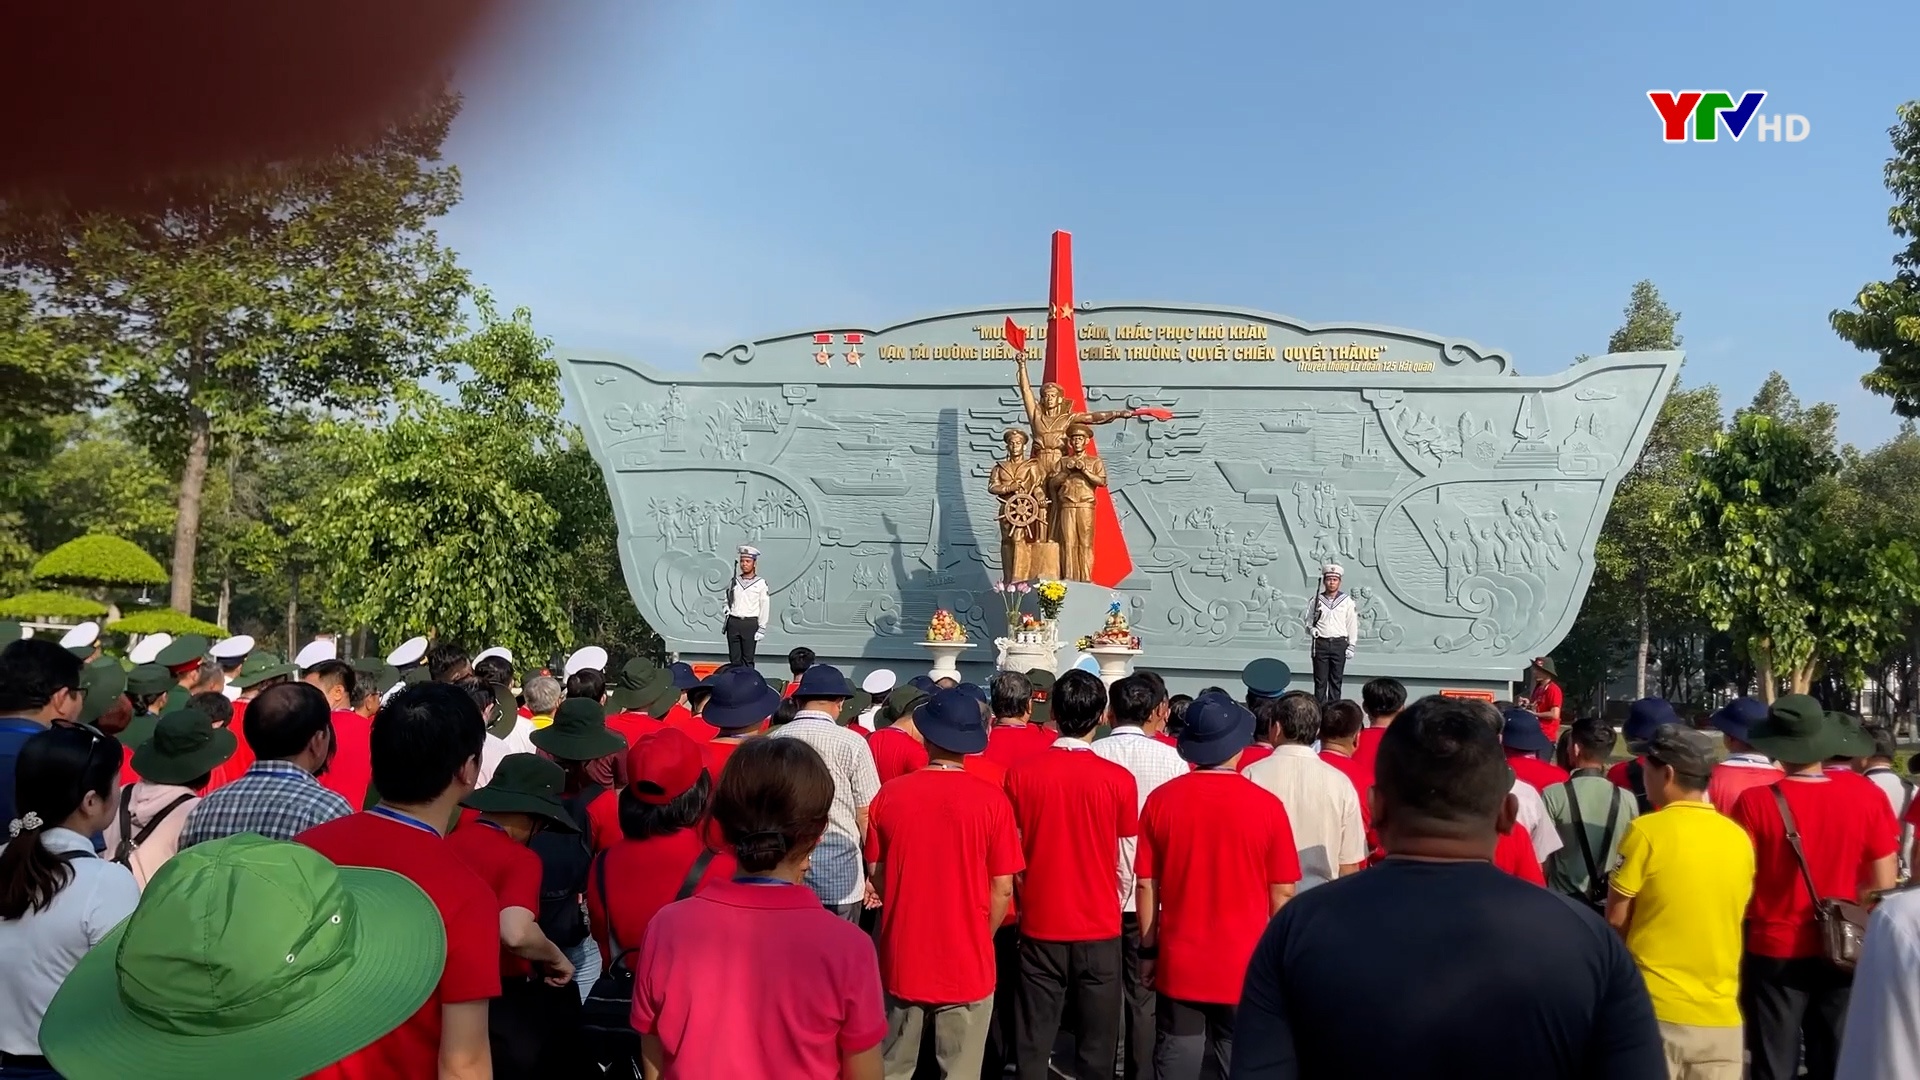 Đoàn công tác tỉnh Yên Bái dâng hương tưởng niệm các anh hùng liệt sỹ tại tượng đài Đoàn tàu không số và Đền tưởng niệm anh hùng - liệt sĩ Đoàn tàu không số